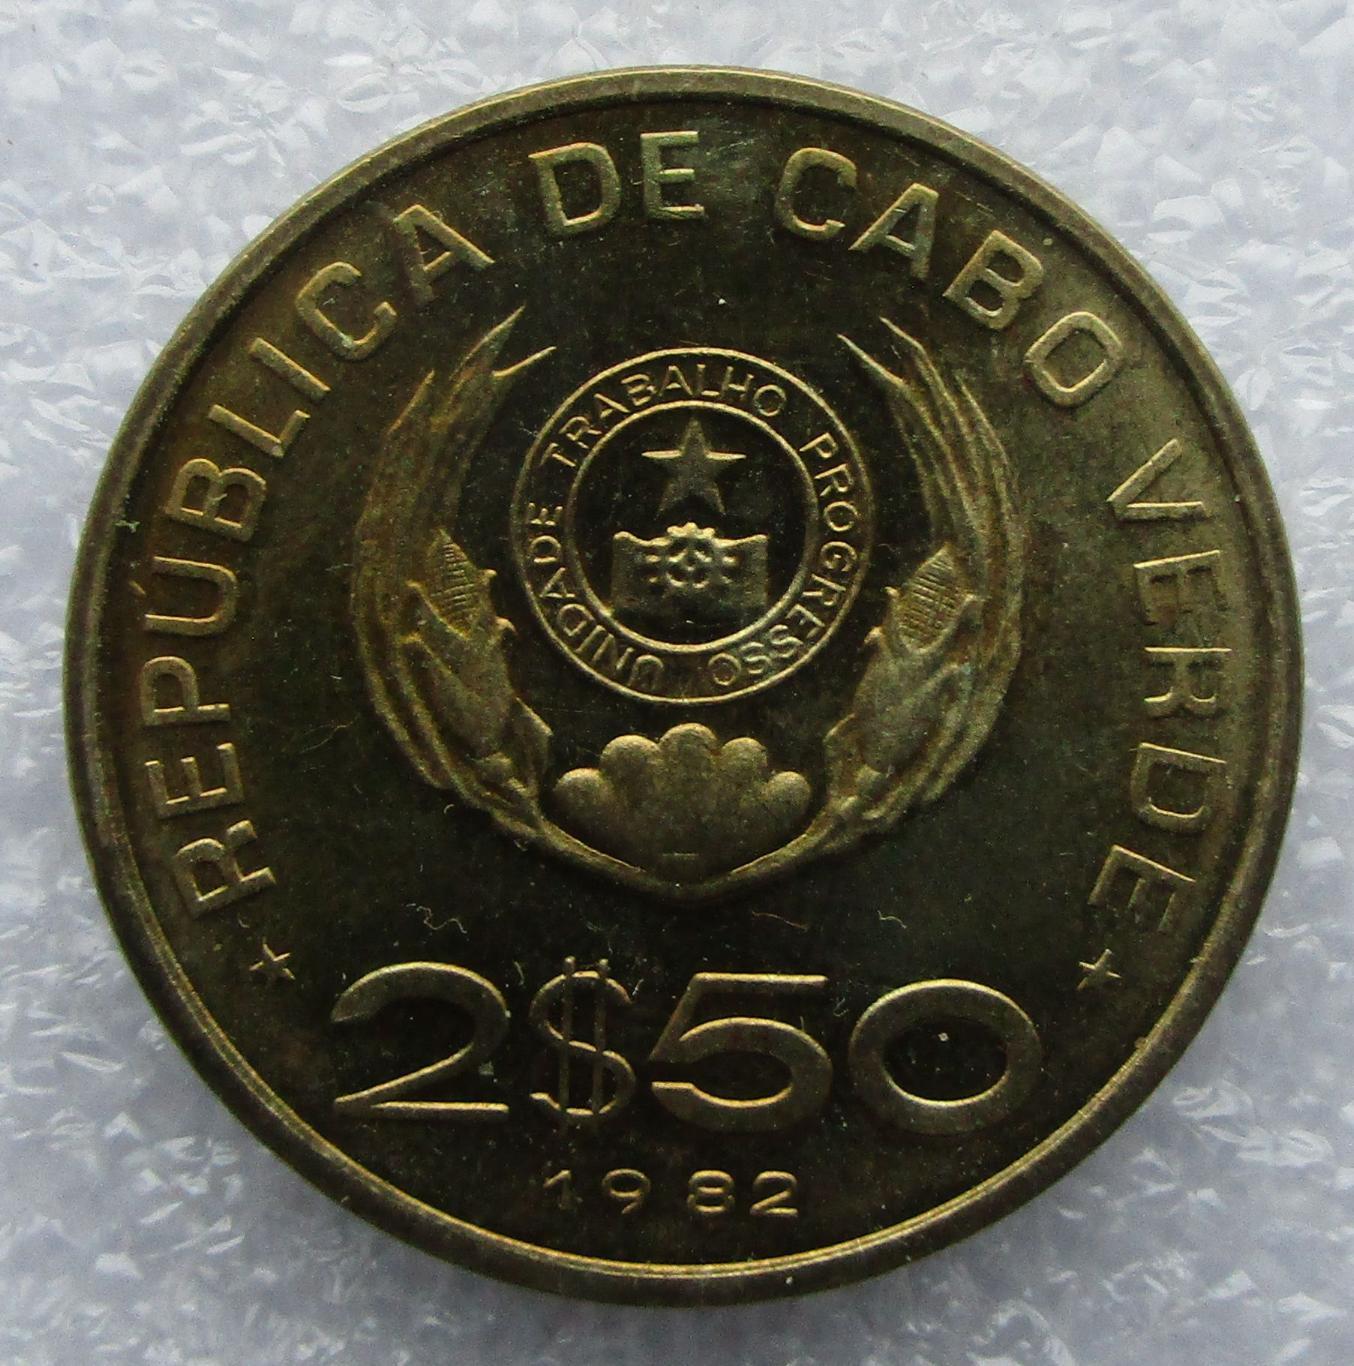 Кабо-Верде 2.5 эскудо - 1982. UNC. Штемпельный блеск. 3